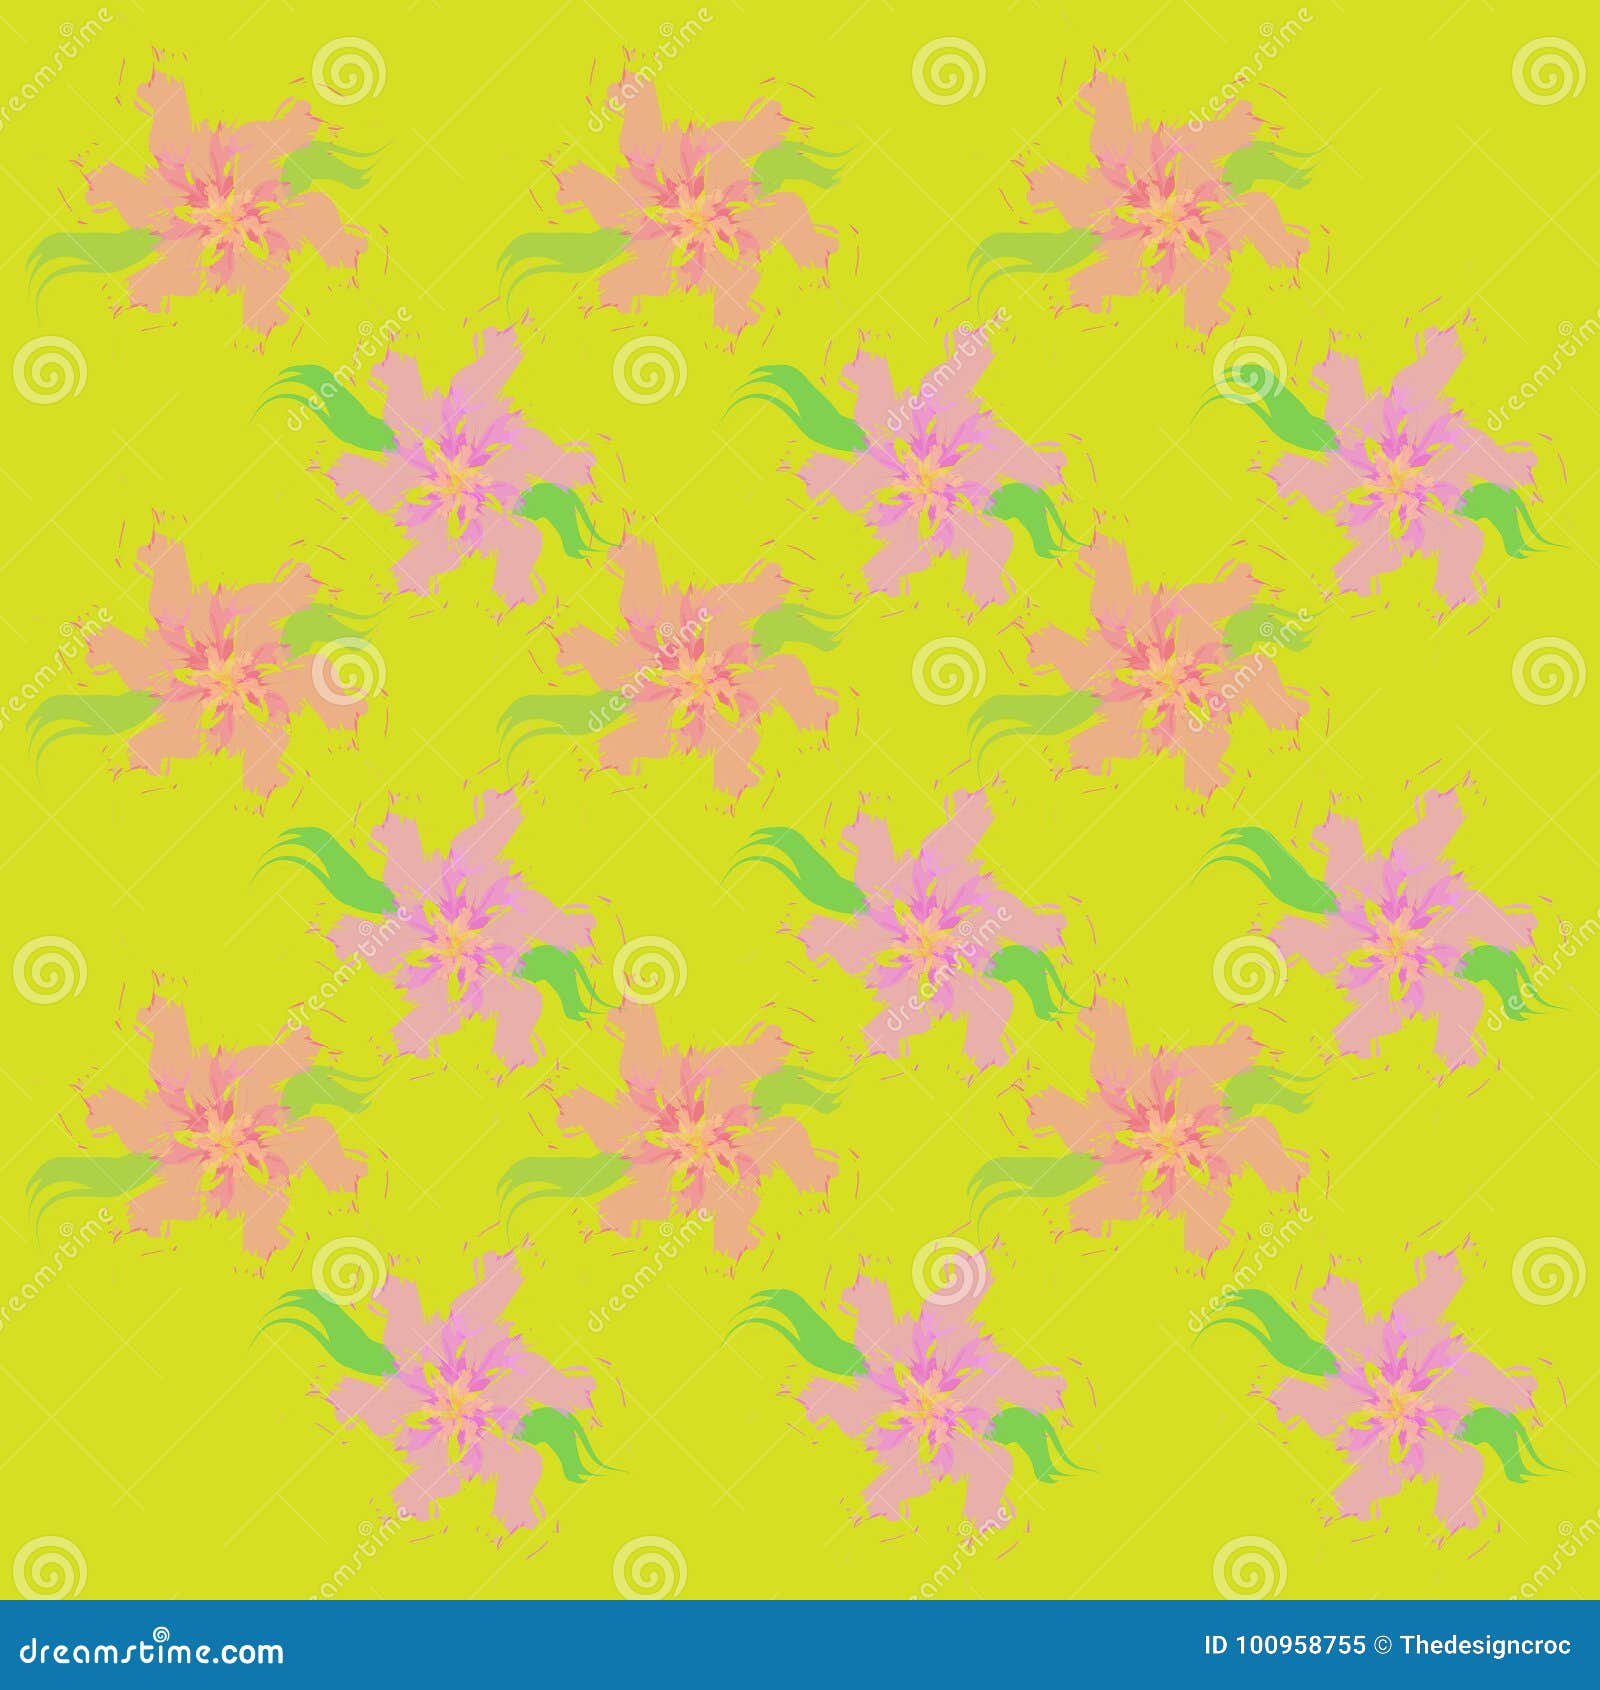 ᴘʀᴇᴘᴘʏ ɪᴍᴀɢᴇꜱ   Pink wallpaper backgrounds Preppy wallpaper Iphone wallpaper  preppy